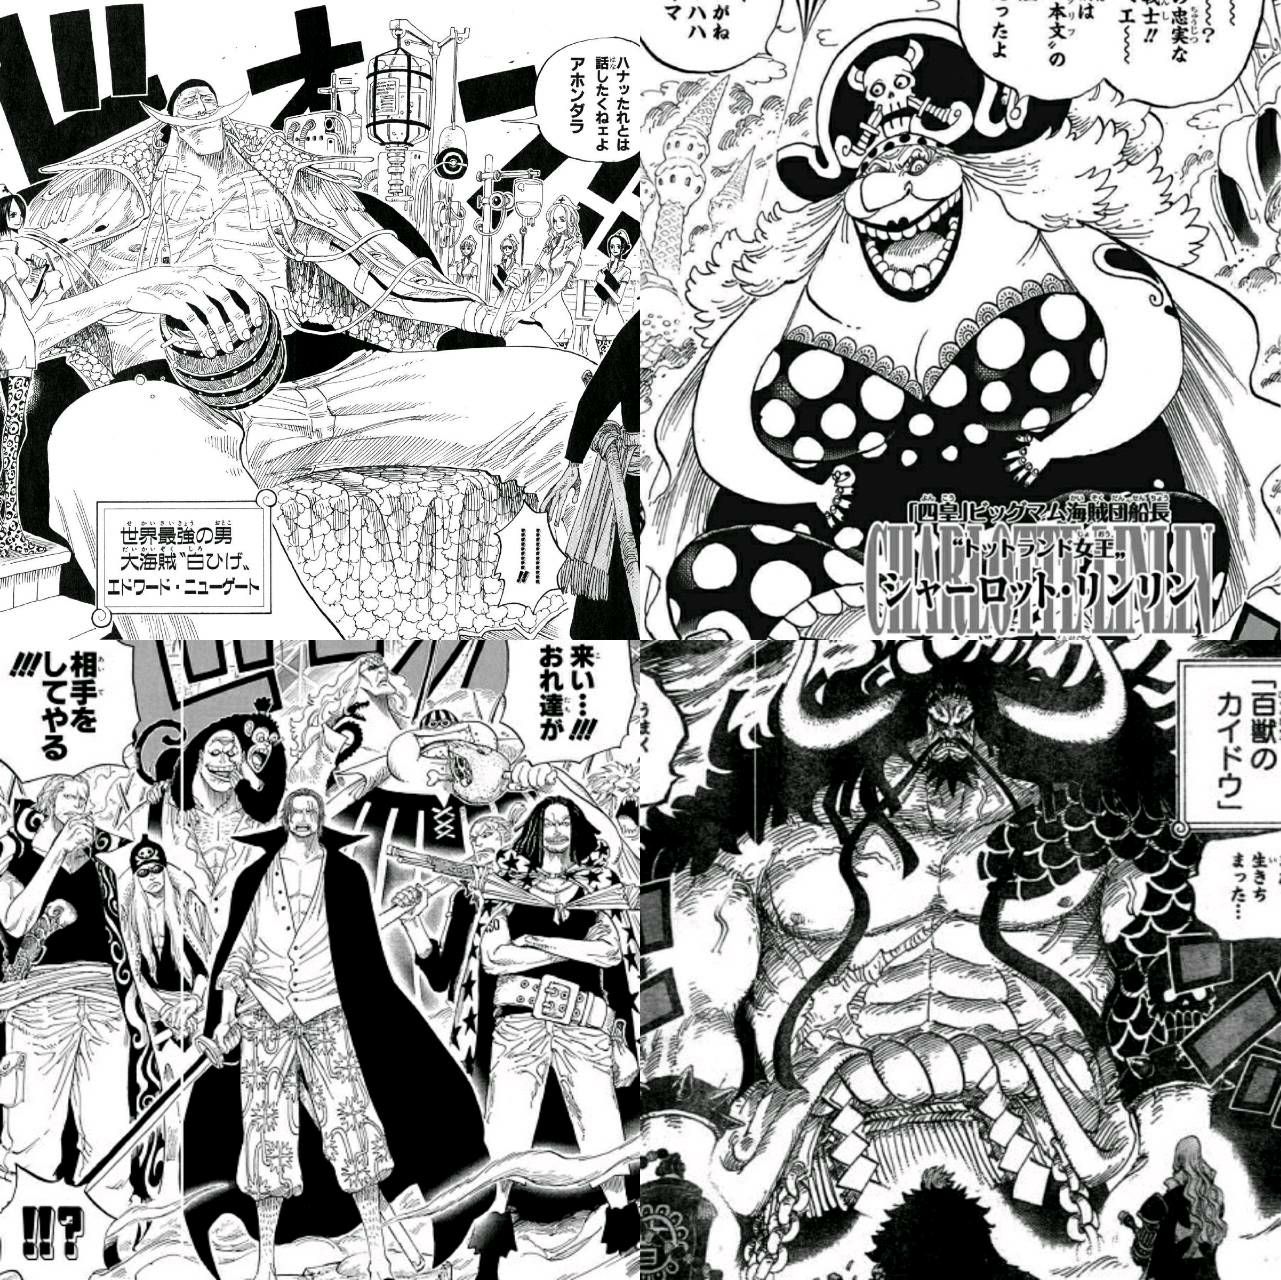 One Piece ワンピース に登場する海賊 四皇の異名まとめ 3 4 Renote リノート